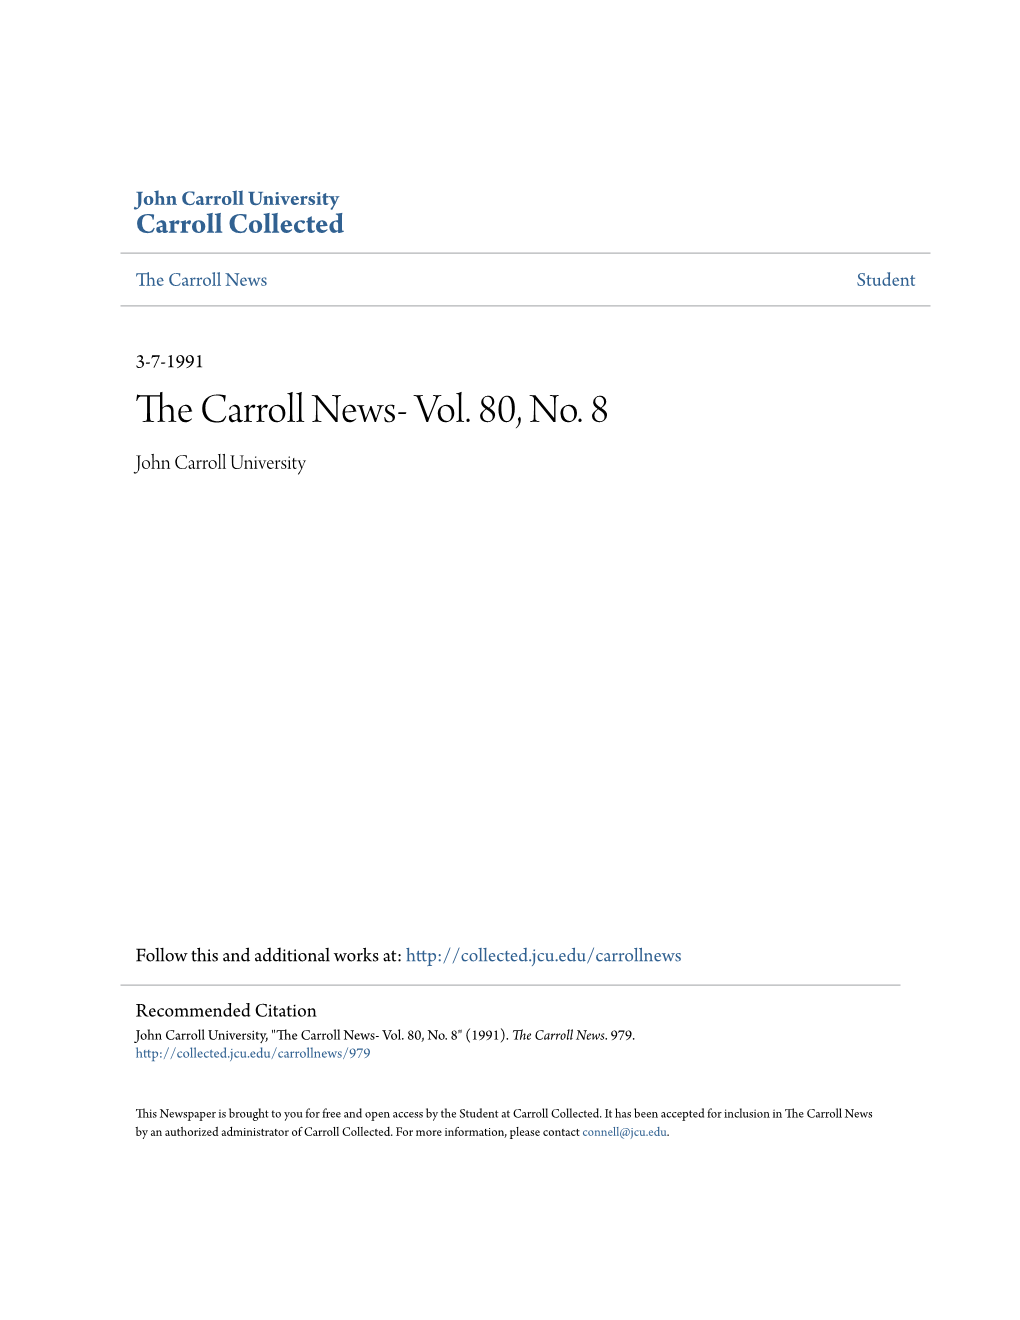 The Carroll News- Vol. 80, No. 8